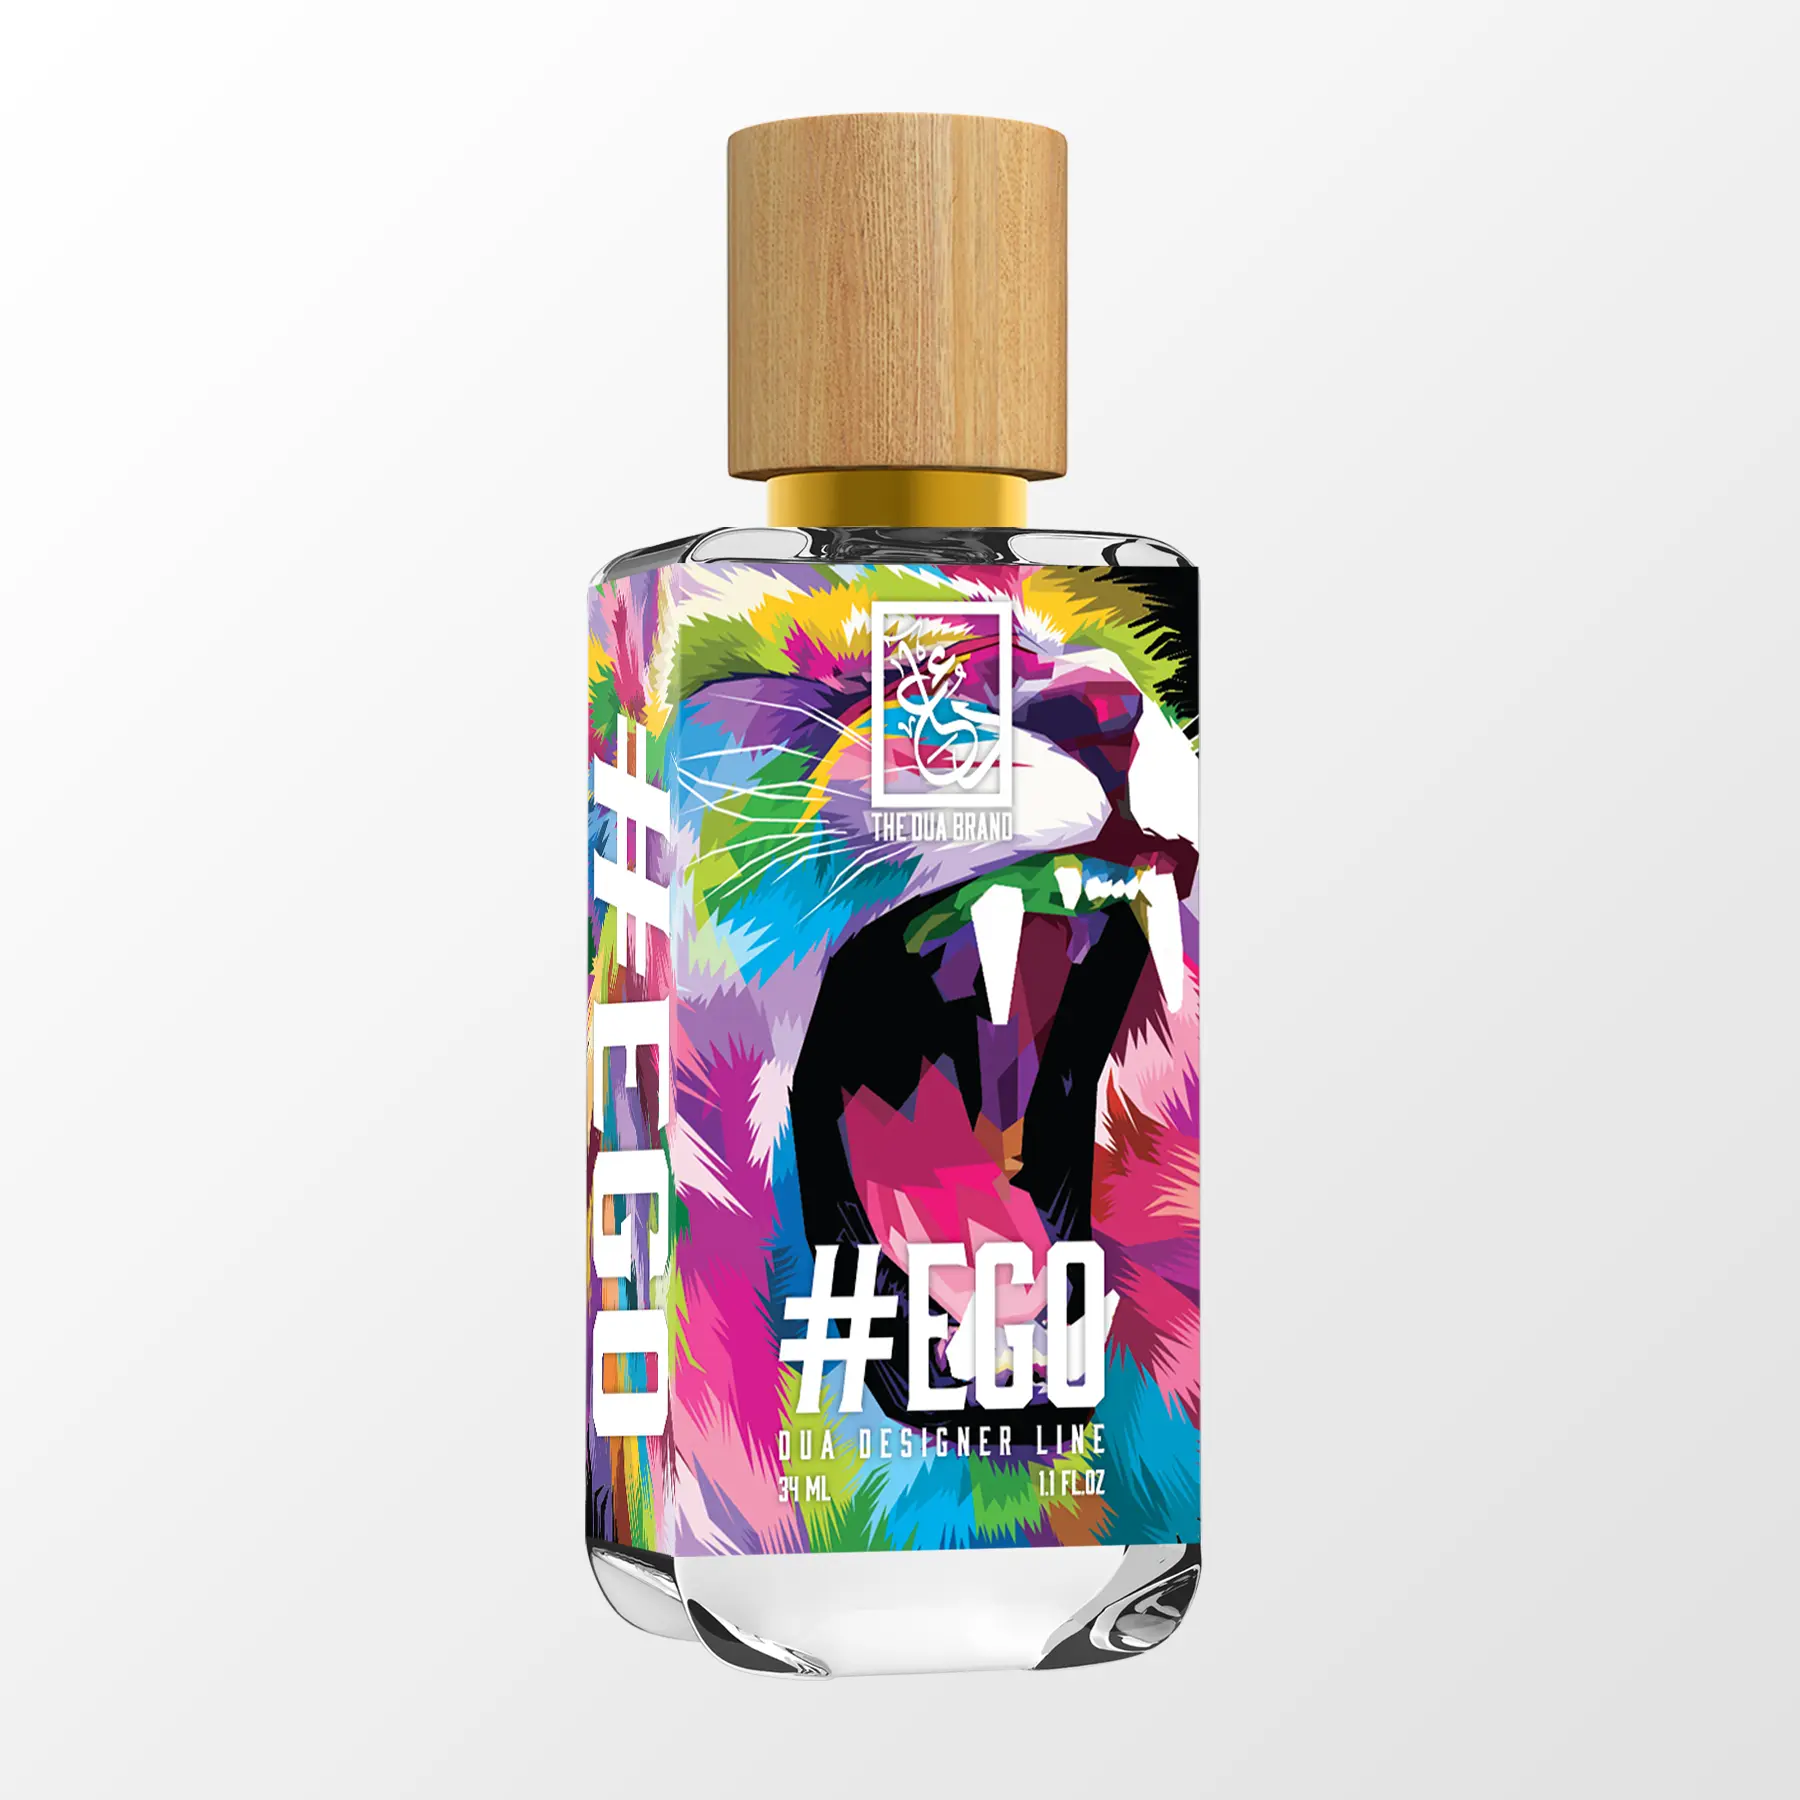 Firoza - Dua Fragrances - Inspired by Bleu Turquoise Armani Privé - Unisex Perfume - 34ml/1.1 fl oz - Extrait de Parfum